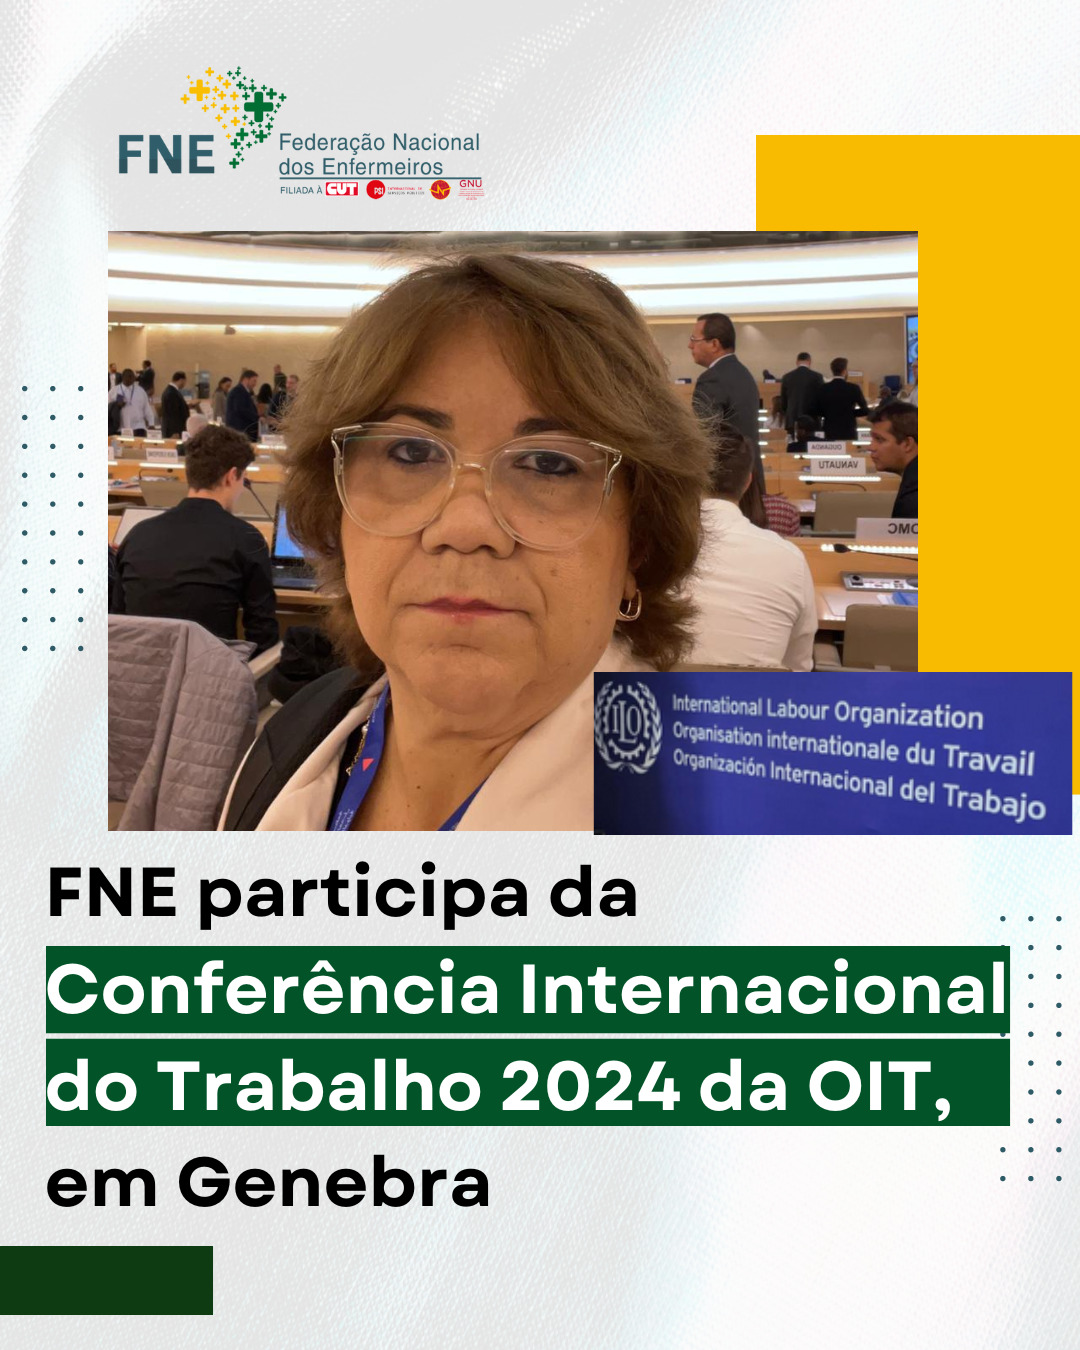 FNE participa da Conferência Internacional do Trabalho 2024 da OIT, em Genebra